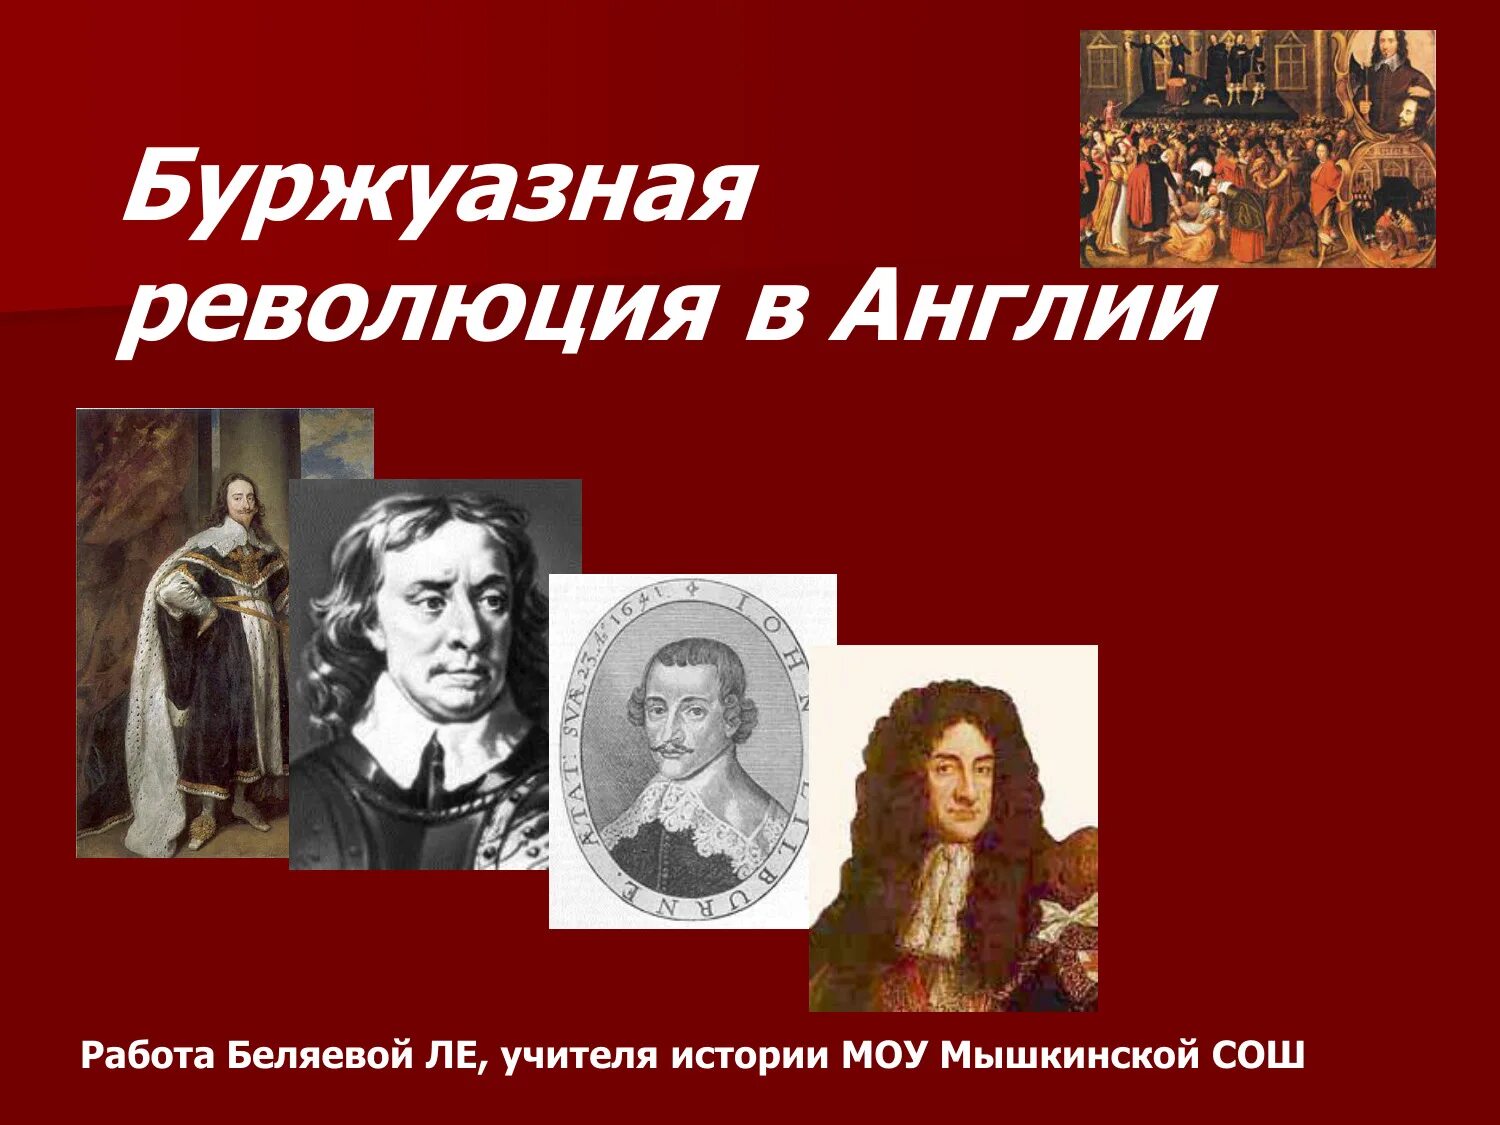 Английская буржуазная революция 17. Лидеры английской революции 1640-1660. Английская революция 1640-1660. Лидеры революции в Англии.